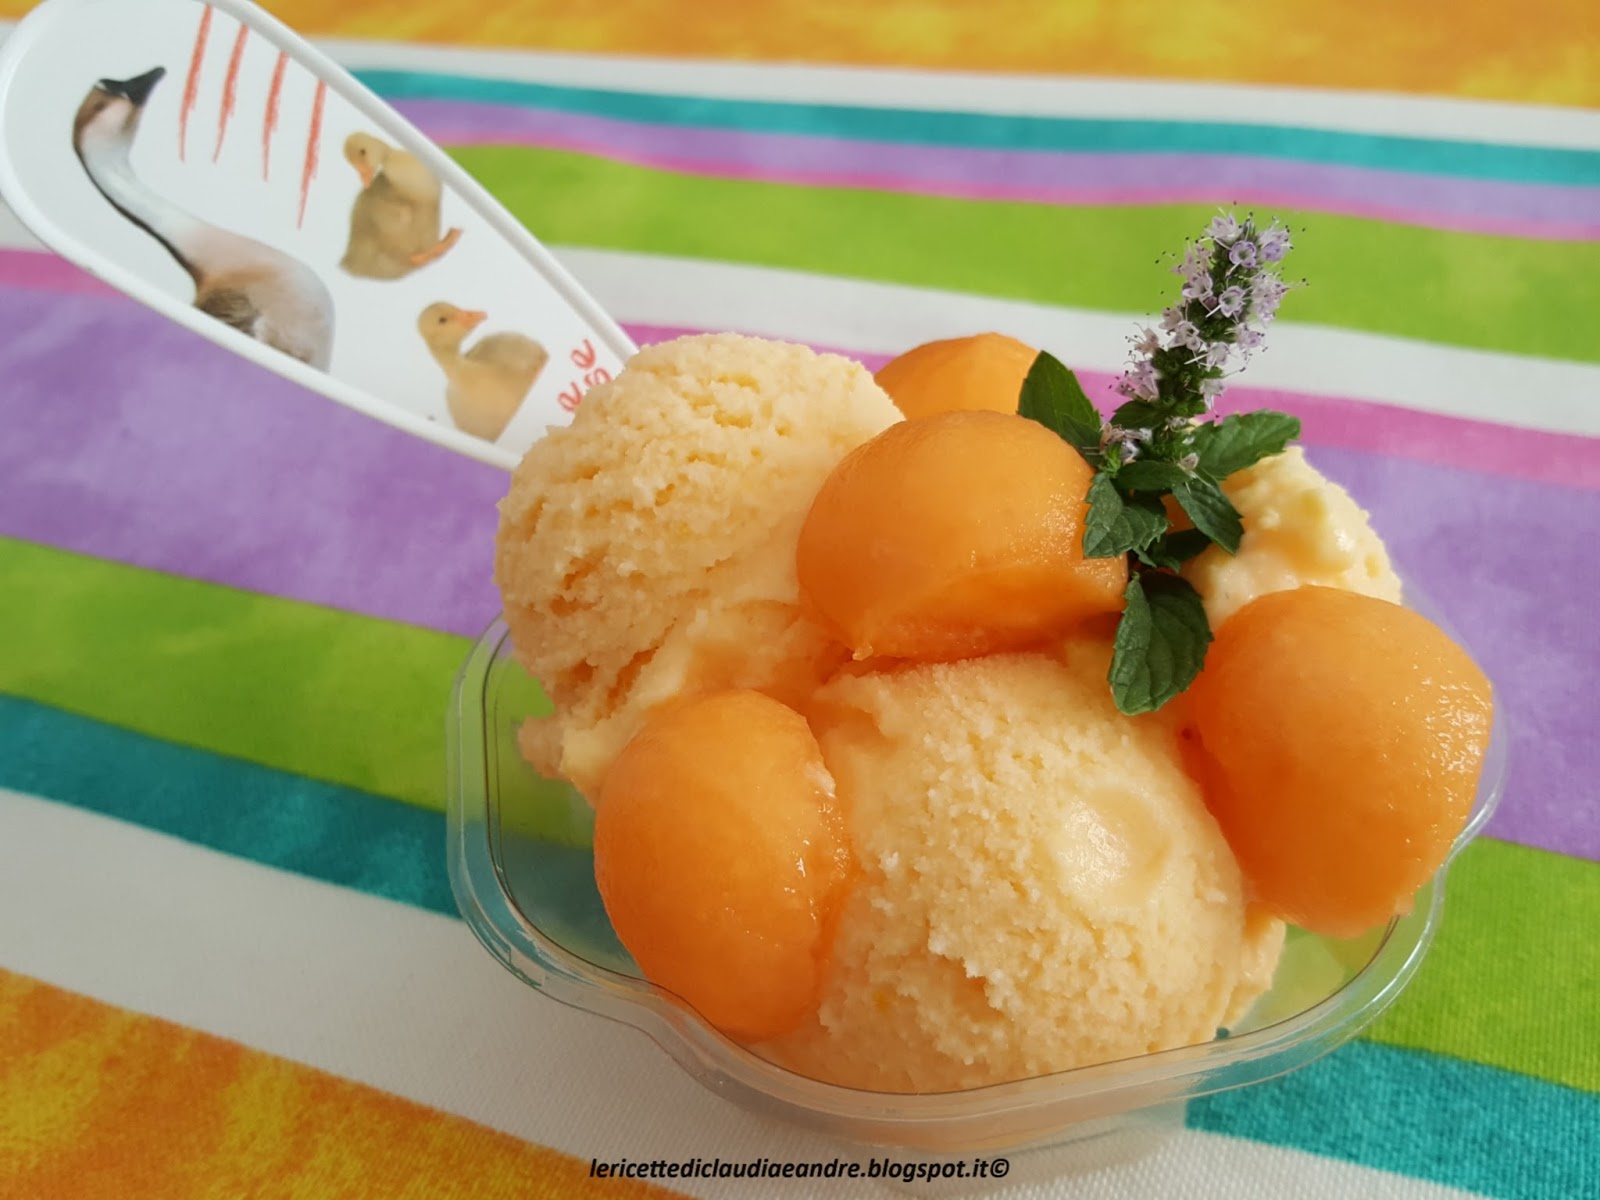 Gelato al melone | Ricetta ed ingredienti dei Foodblogger italiani